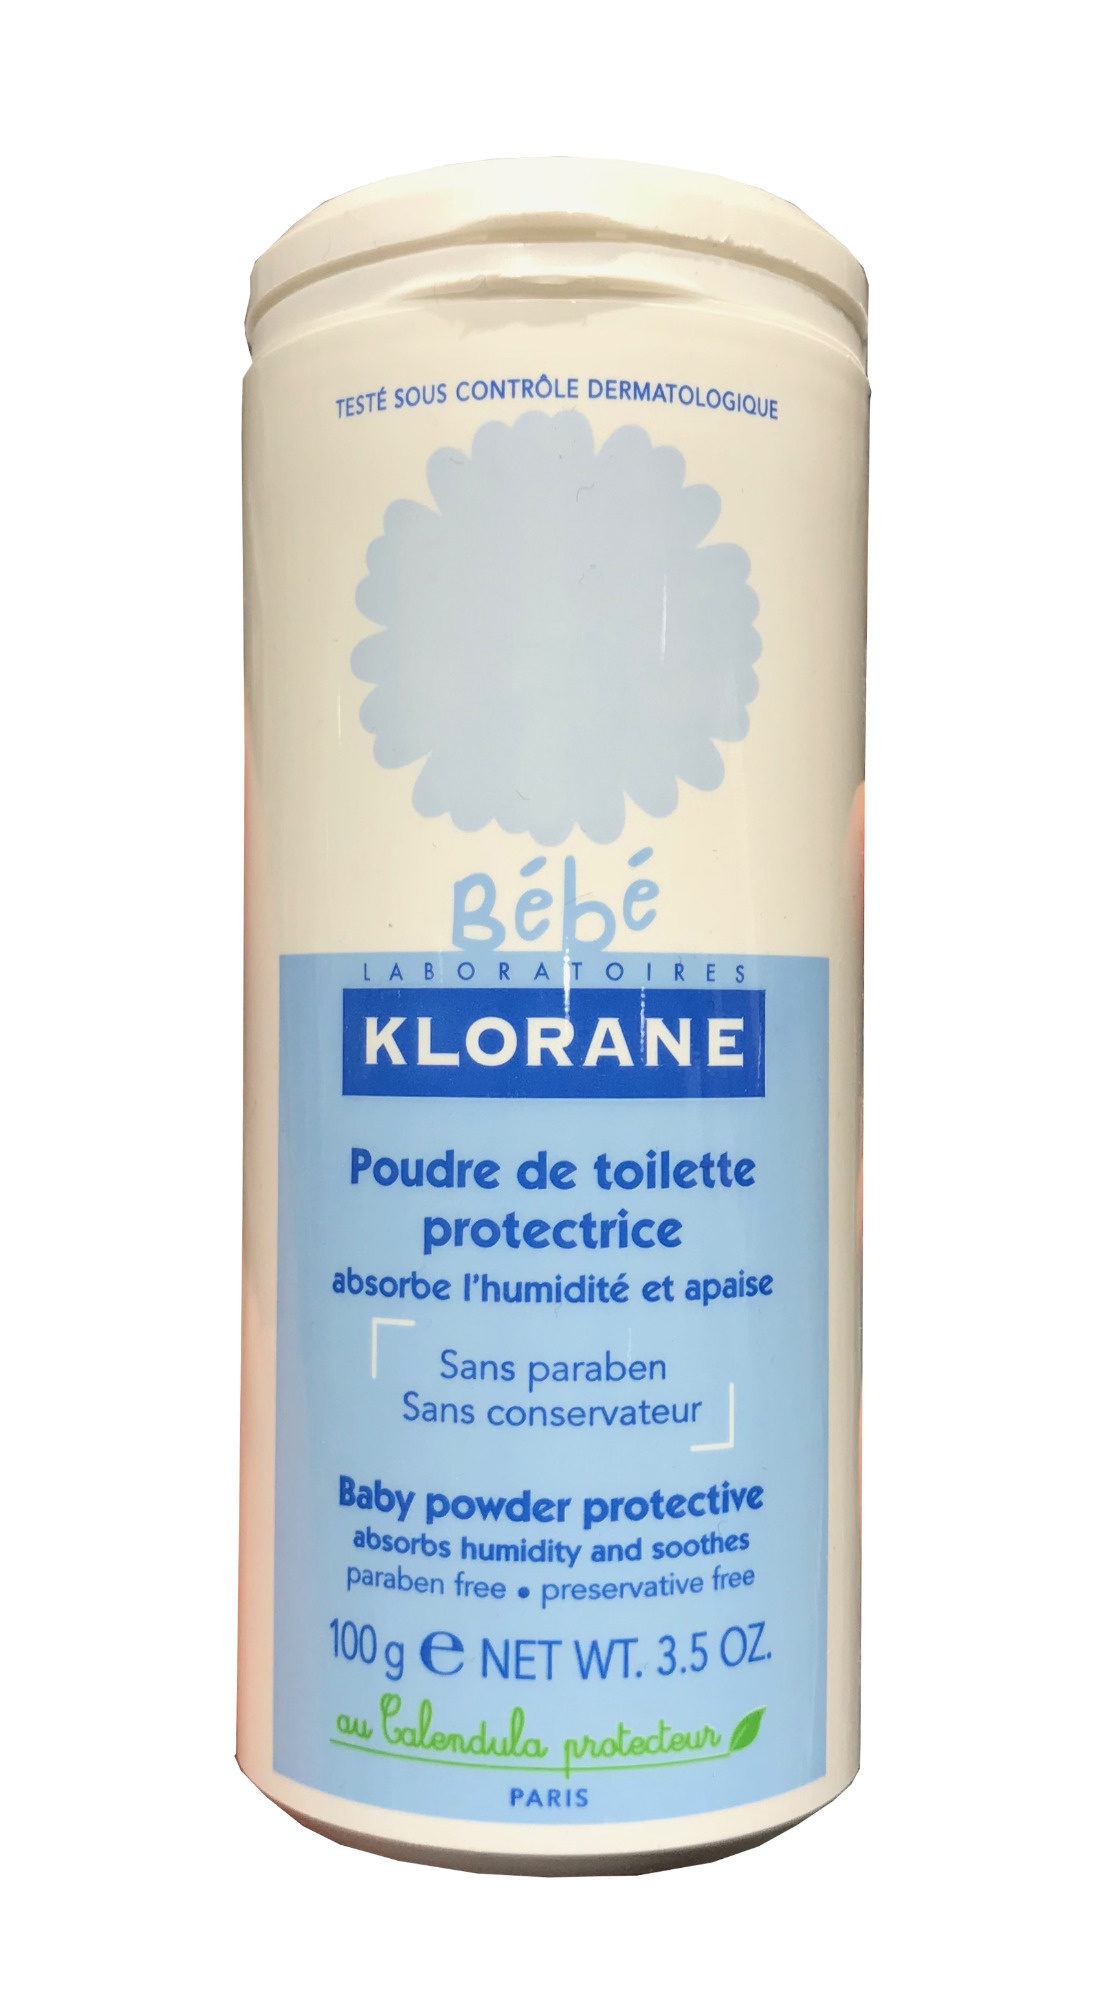 Poudre de toilette protectrice - Product - fr